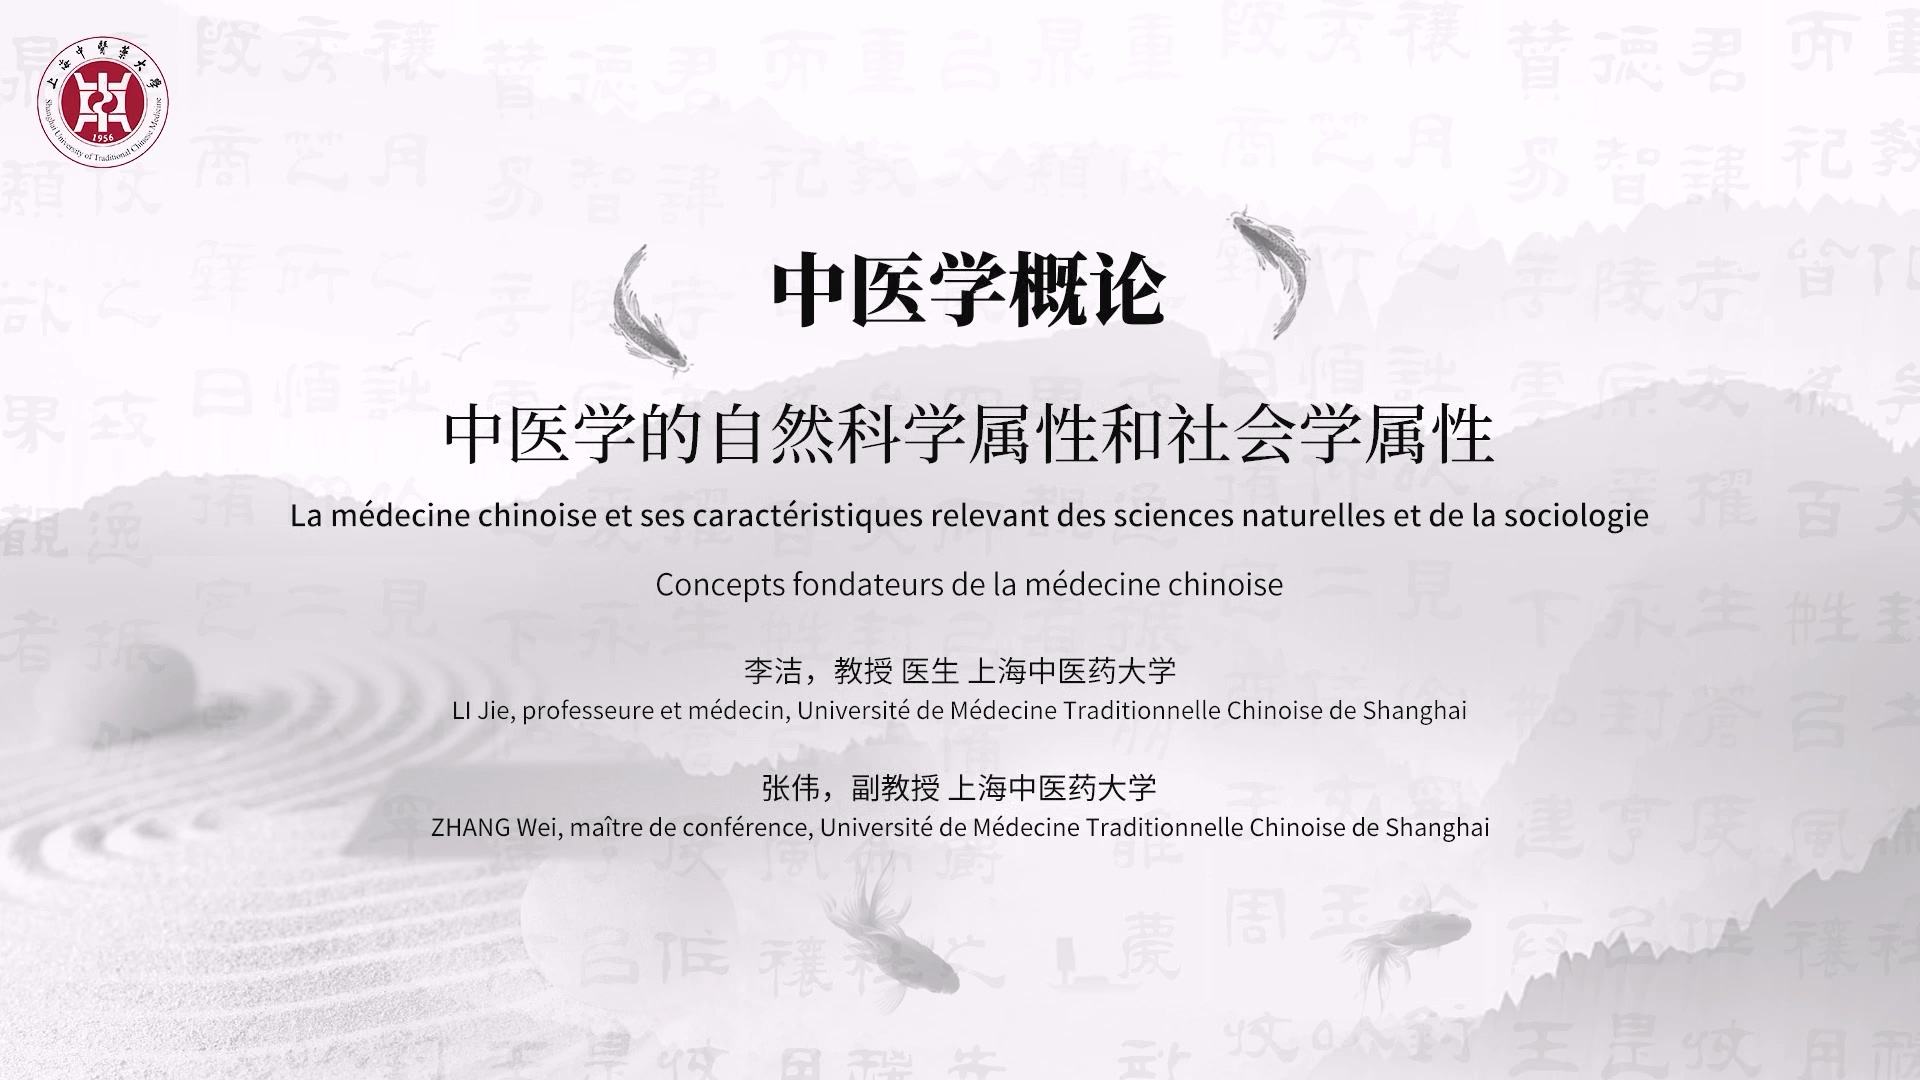 1.2 La médecine chinoise et ses caractéristiques relevant des sciences naturelles et de la sociologie